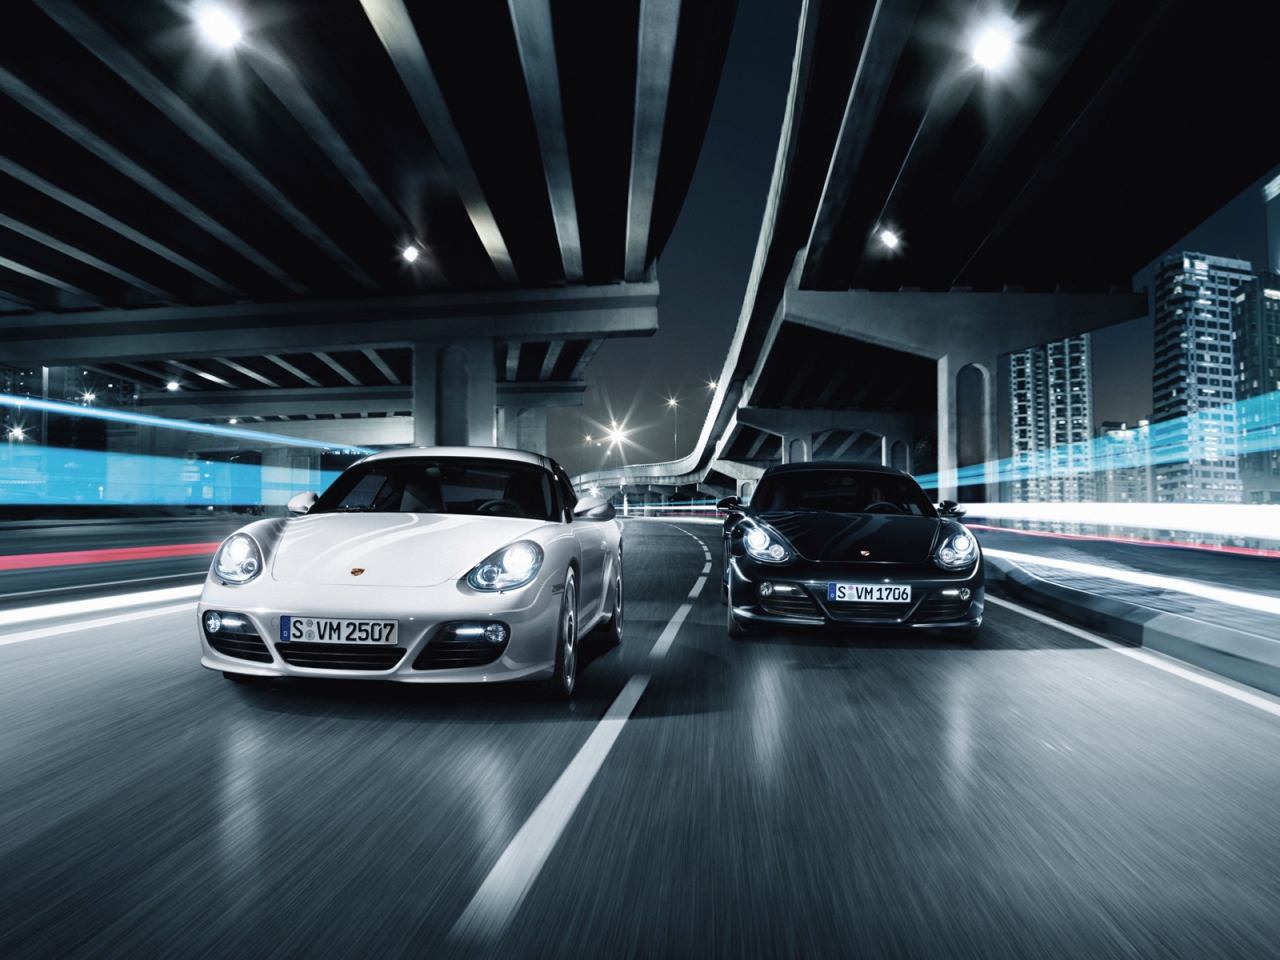 Porsche 911 GT2 Race for 1280 x 960 resolution